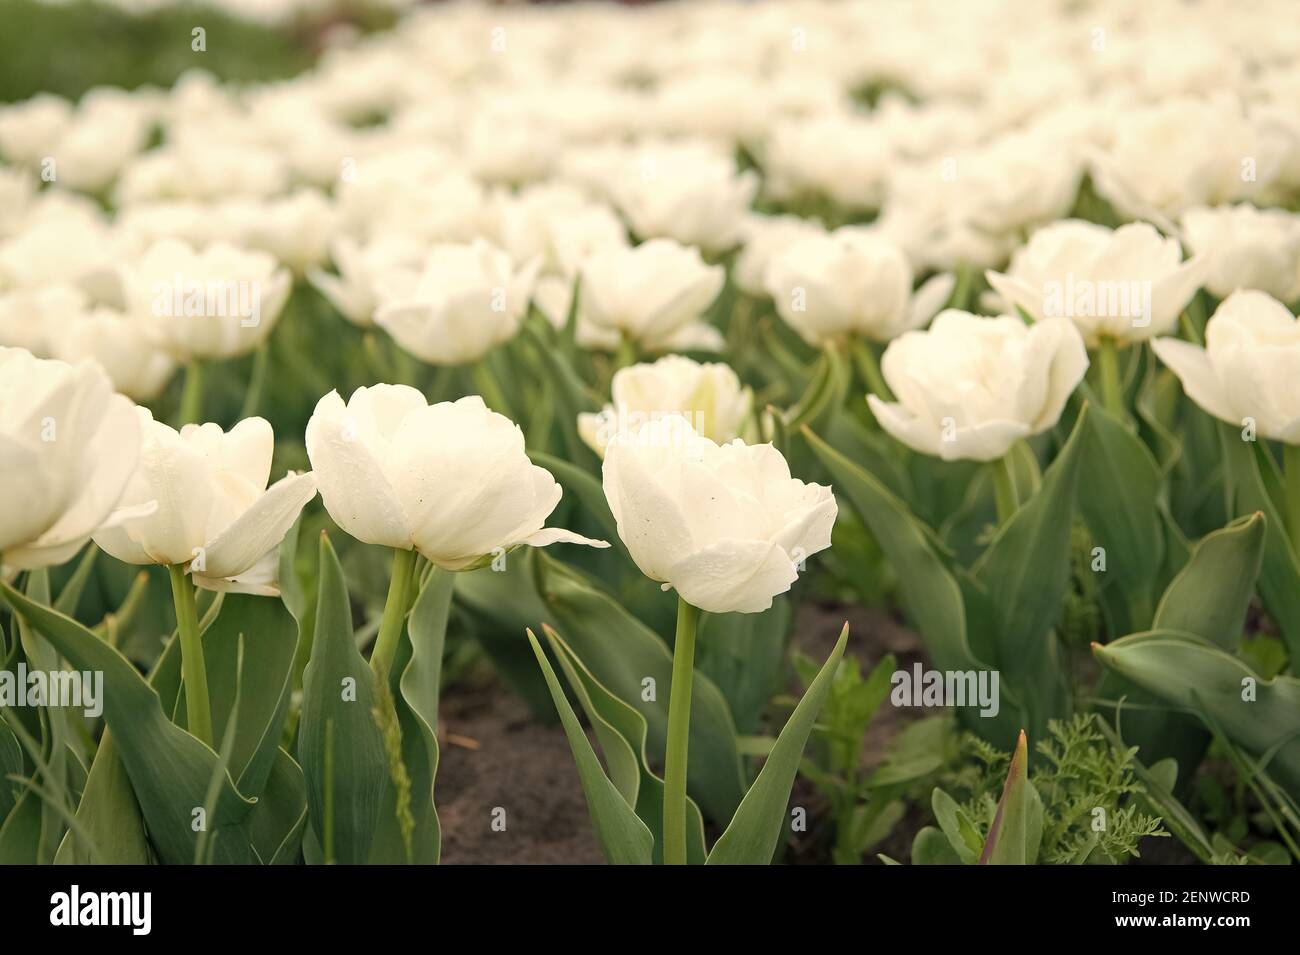 Bonita flor. El tulipán es el símbolo de Holanda. Flores blancas y  vibrantes. Campo con tulipanes en holanda. Campo de tulipanes con varios  tipos y colores. Paisaje natural de Europa. Flores frescas